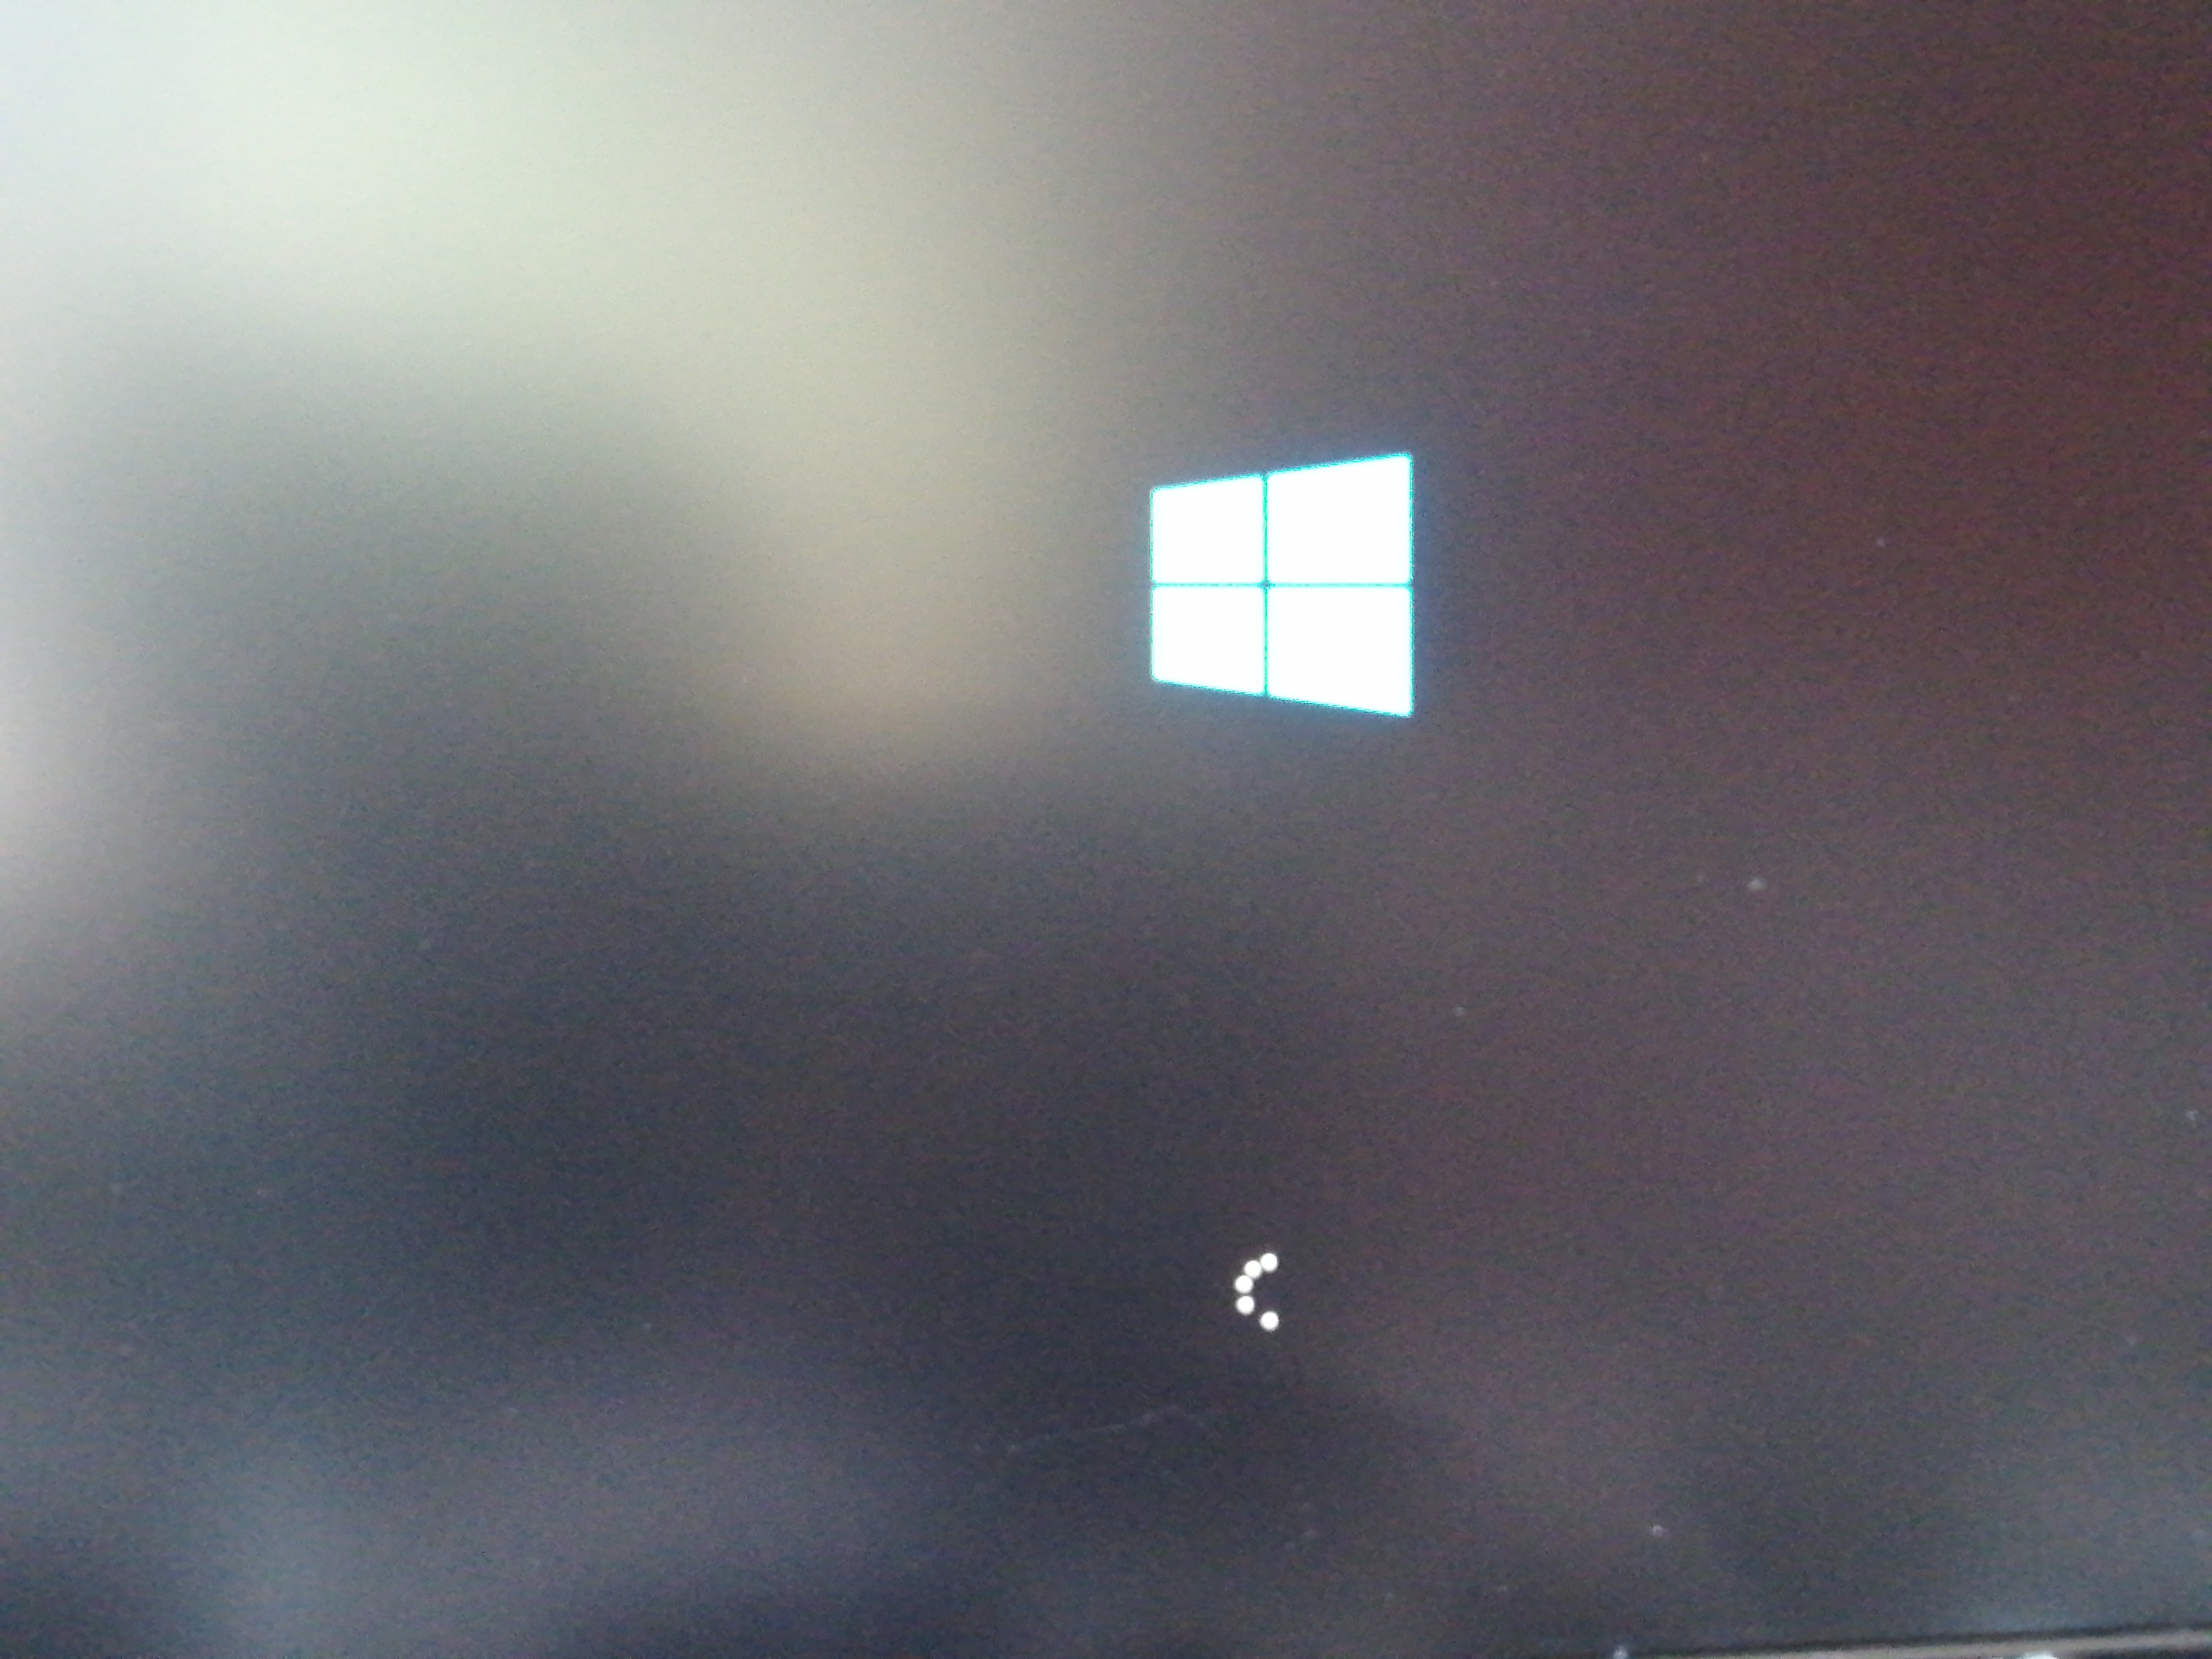 Windows Startproblem